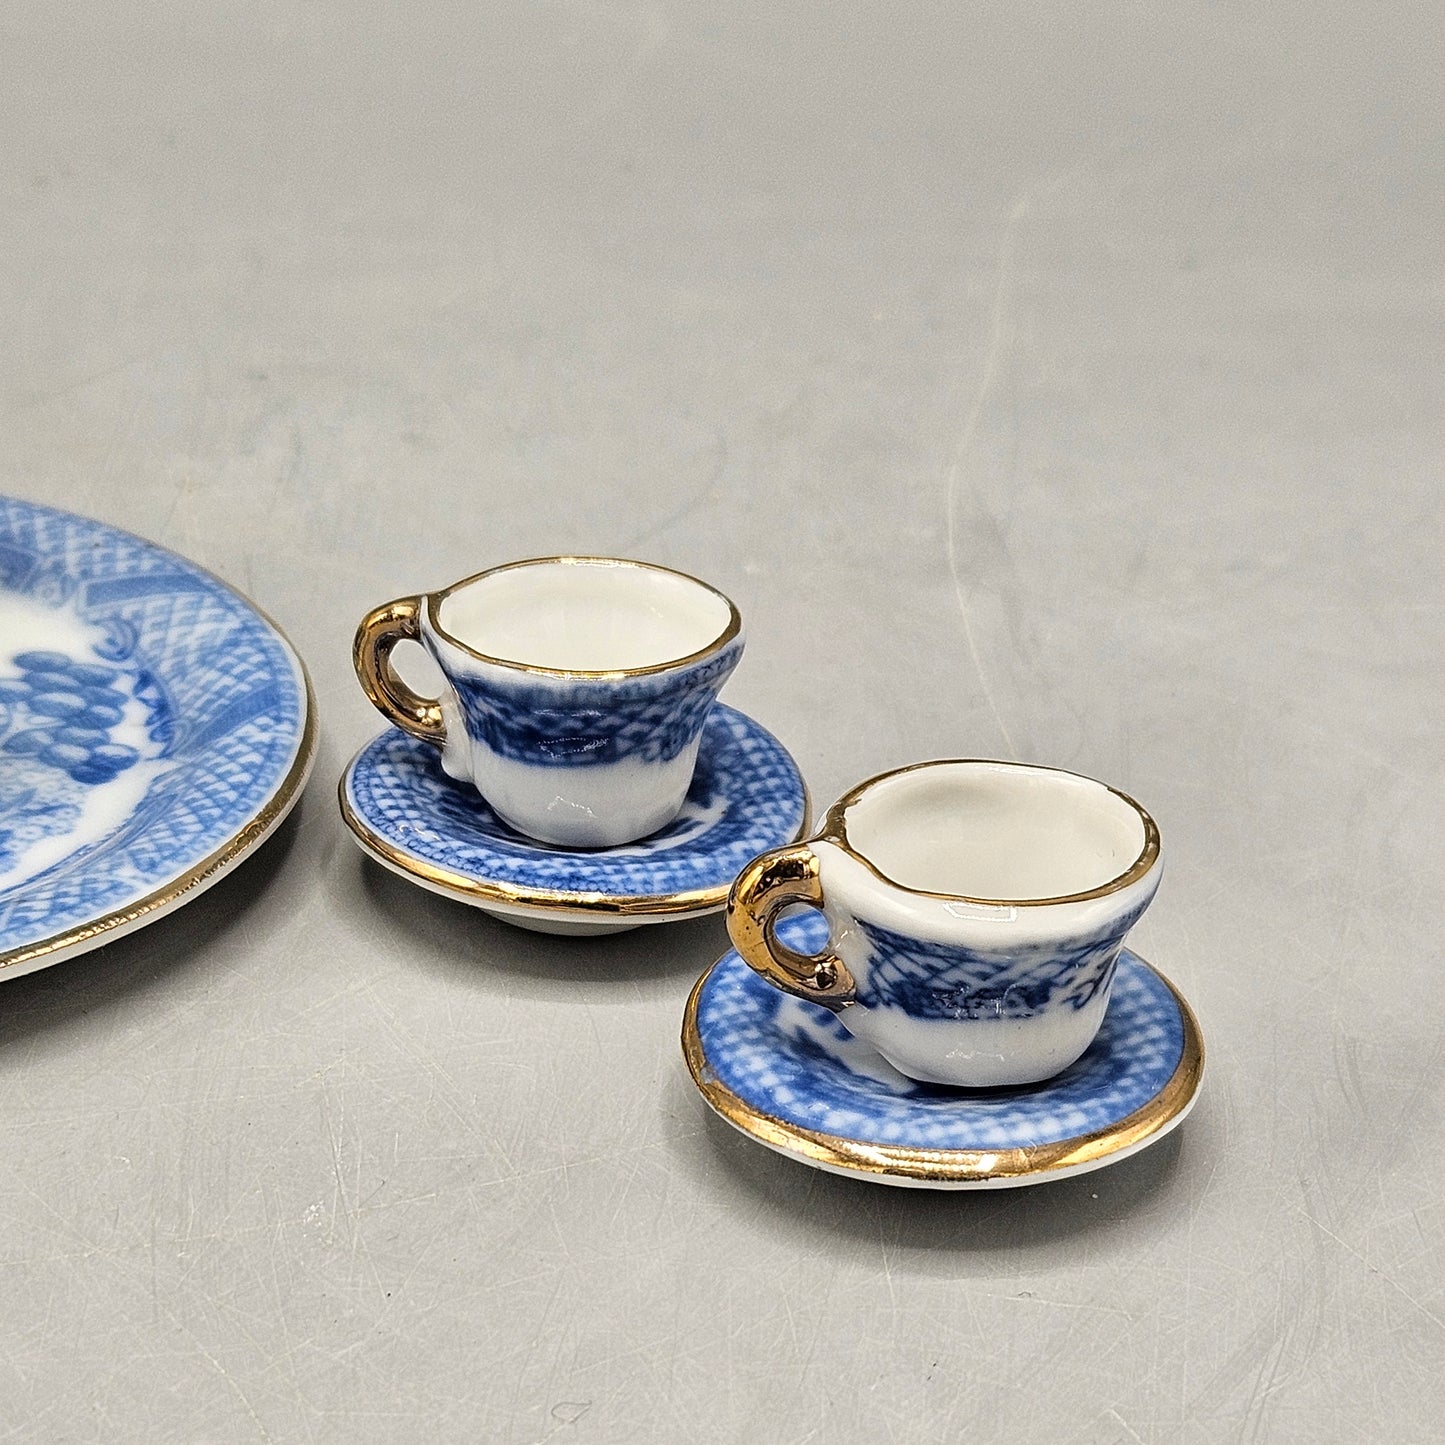 Adorable Miniature Vintage Blue & White Transferware Tea Set